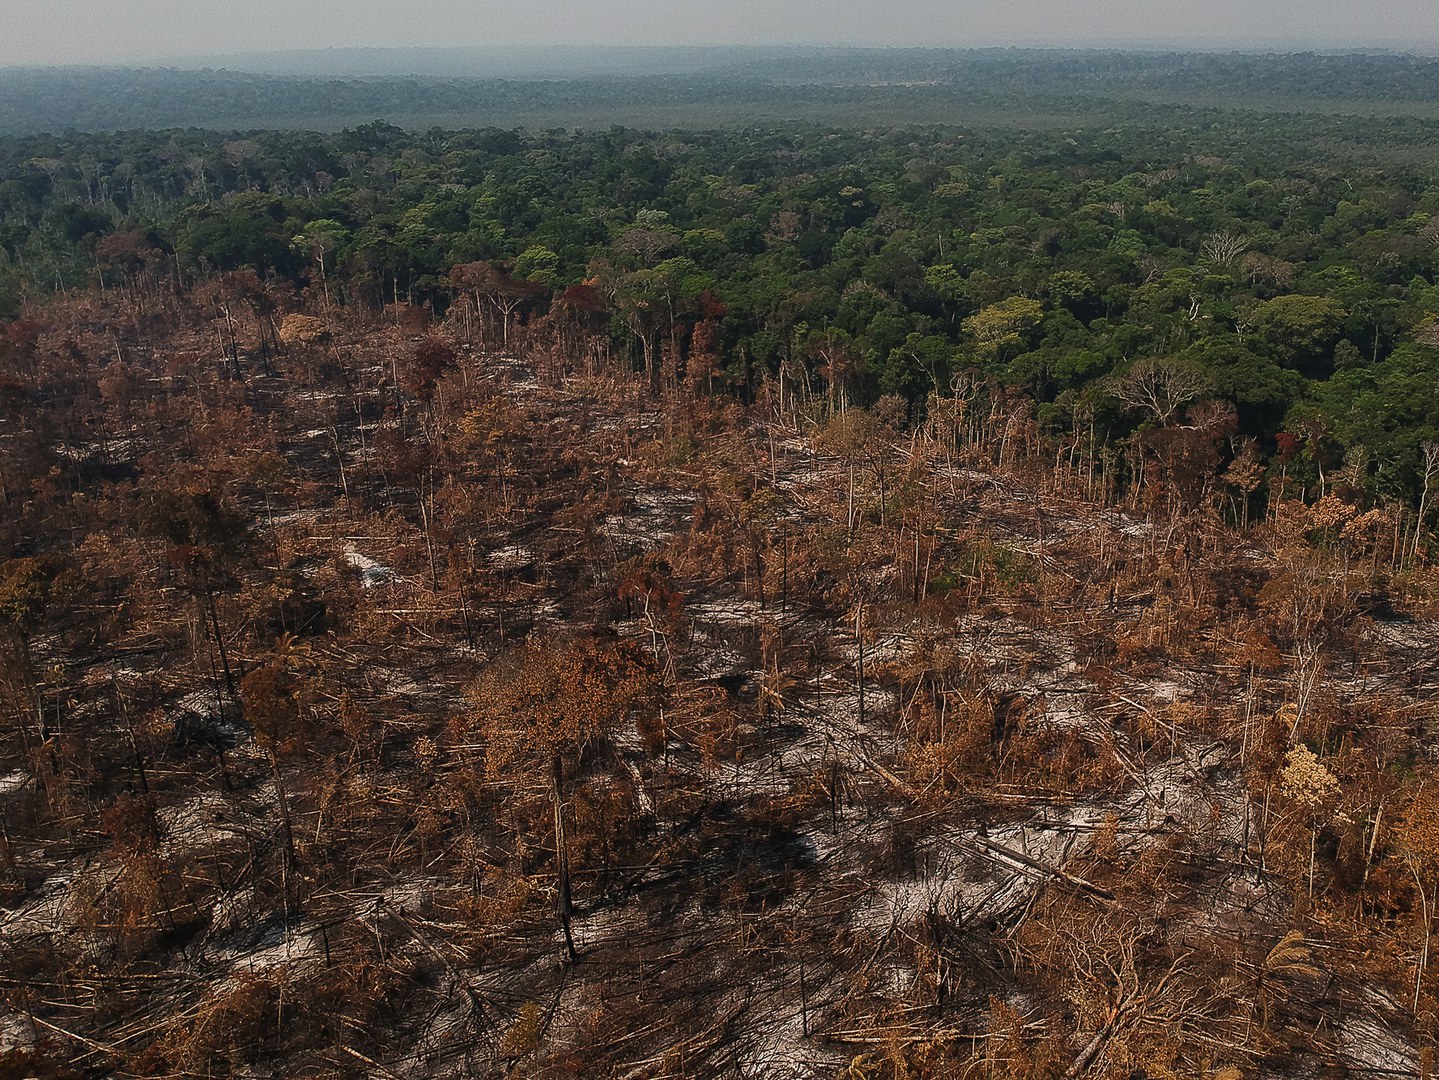 Die Abholzung tropischer Wälder führt zu einem starken Rückgang der Biodiversität und der hiesigen Kohlenstoffspeicher.